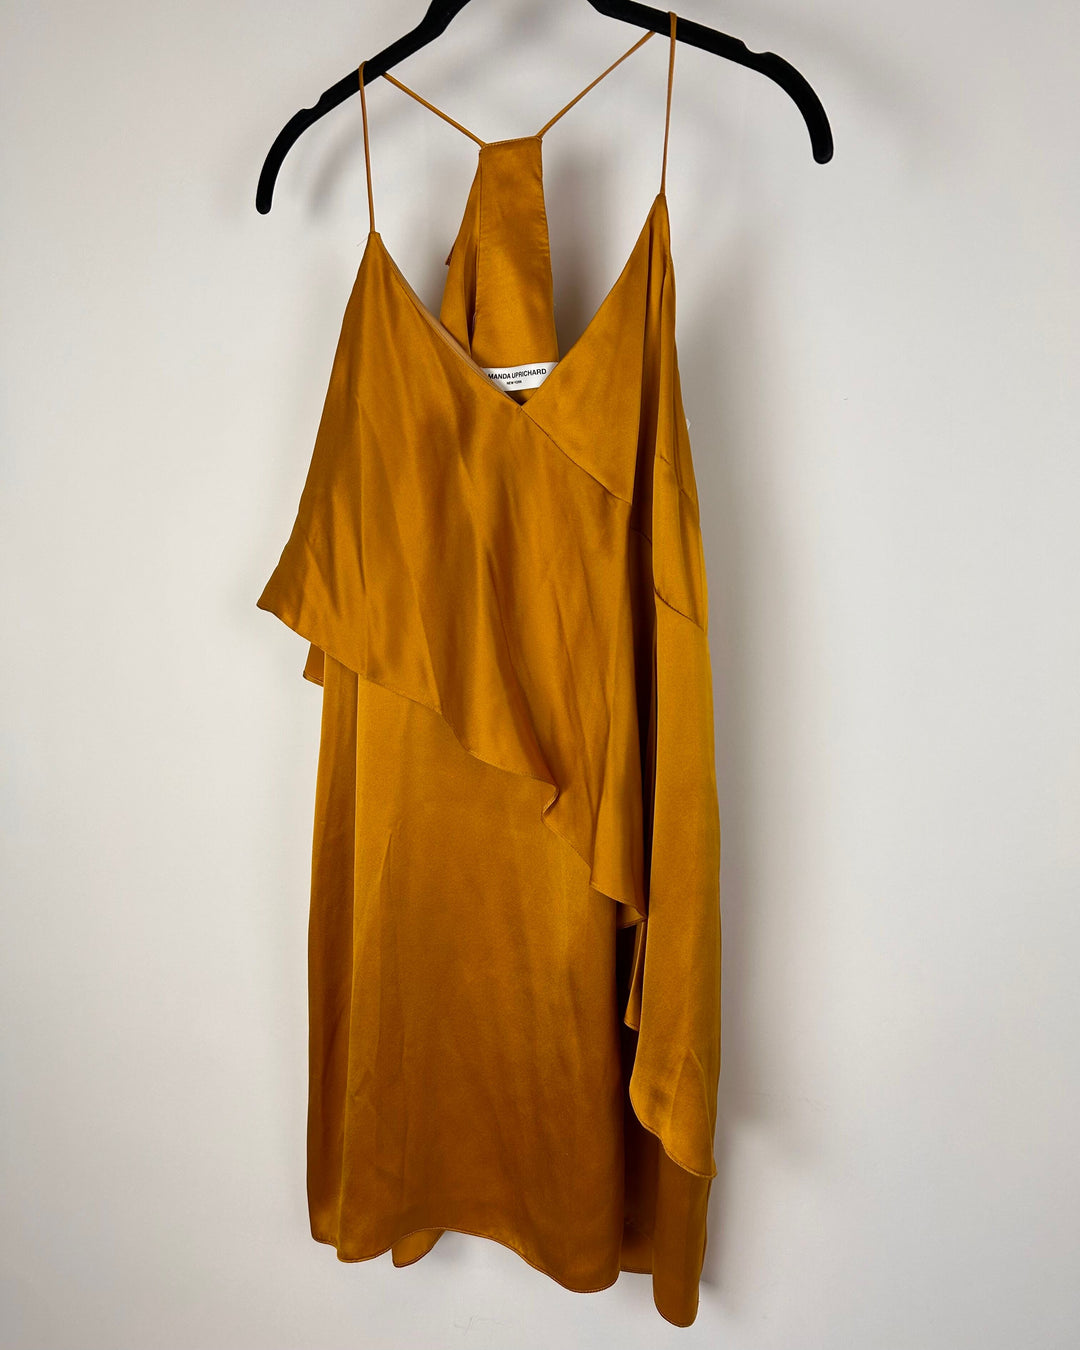 Mustard Yellow Dress - Size 4/6